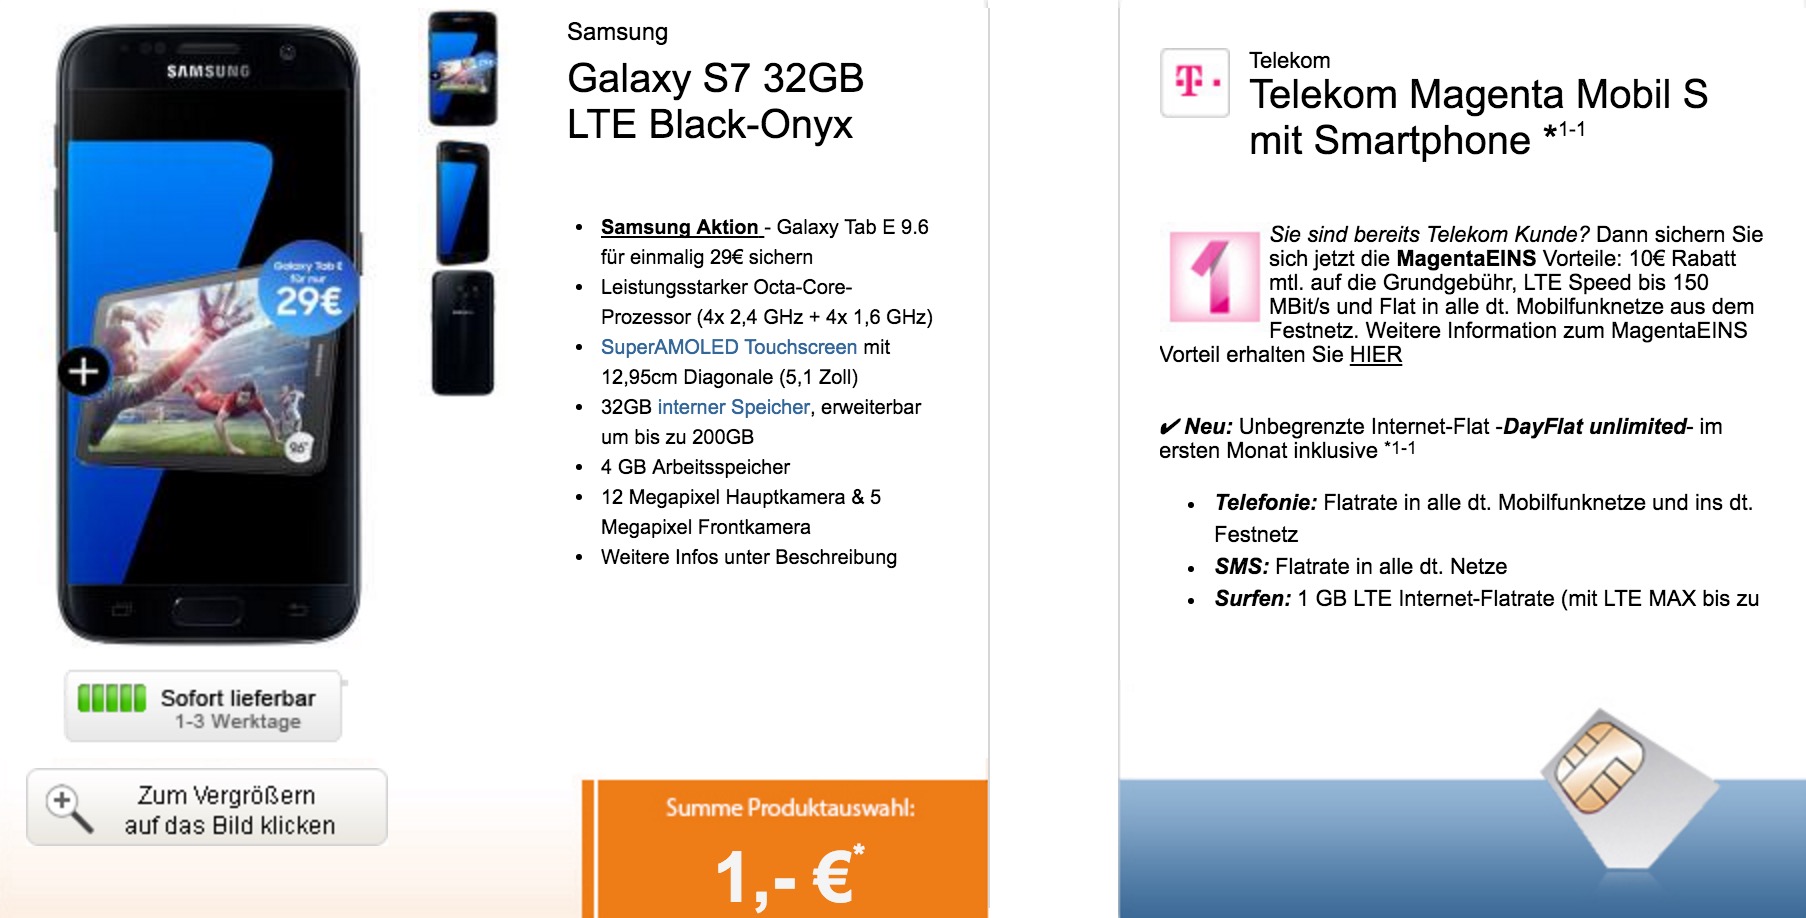 Telekom-Tarif Magenta Mobil S für nur 39,95 Euro monatlich + Top-Smartphone für nur einmalig 1,- Euro + Galaxy Tab E 9.6 für nur 29,- Euro